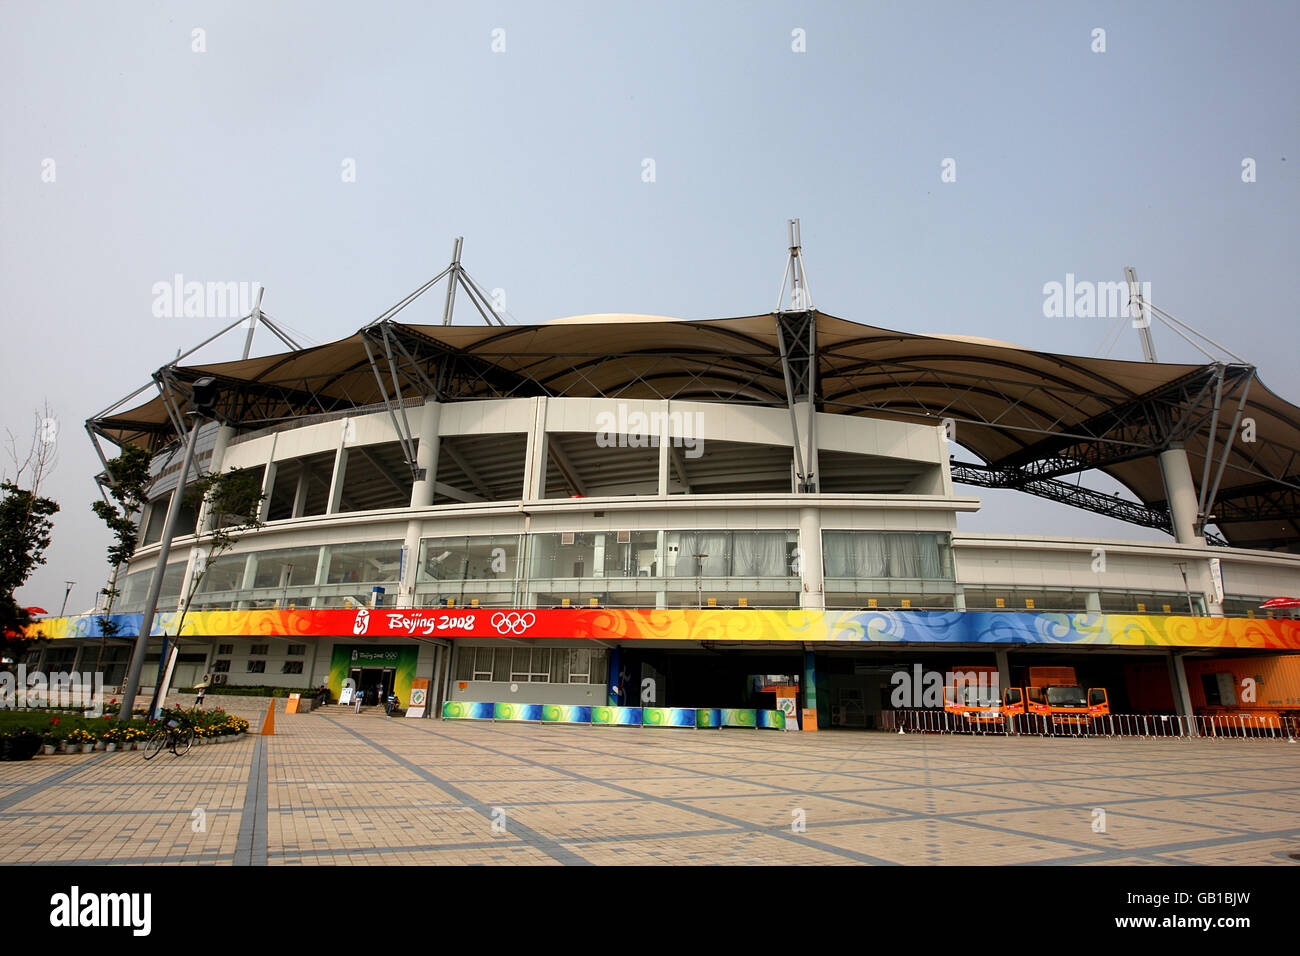 Olympische Spiele - Olympische Spiele In Peking 2008. Allgemeine Ansicht des Qinhuangdao Olympic Sports Center Stockfoto